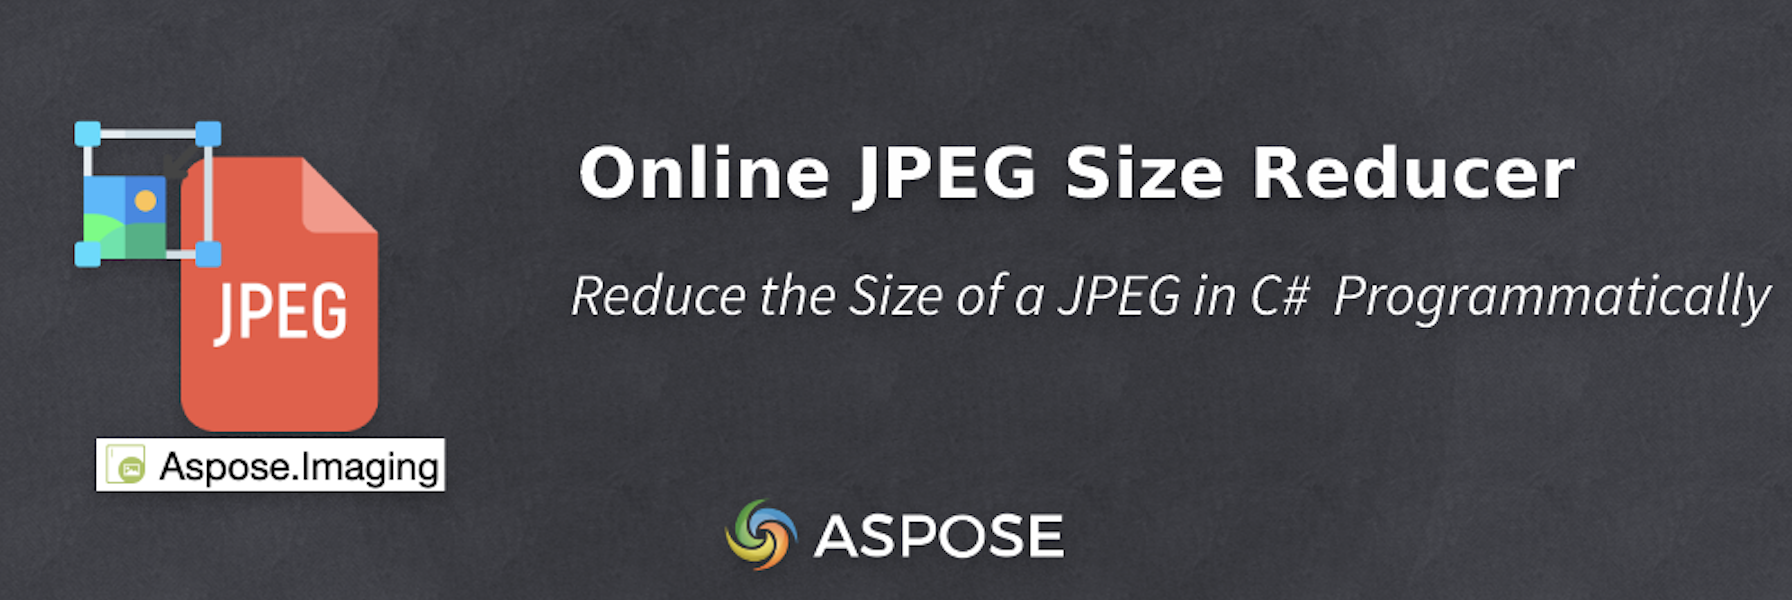 Zmenšení velikosti JPEG v C# - Online JPEG Size Reducer